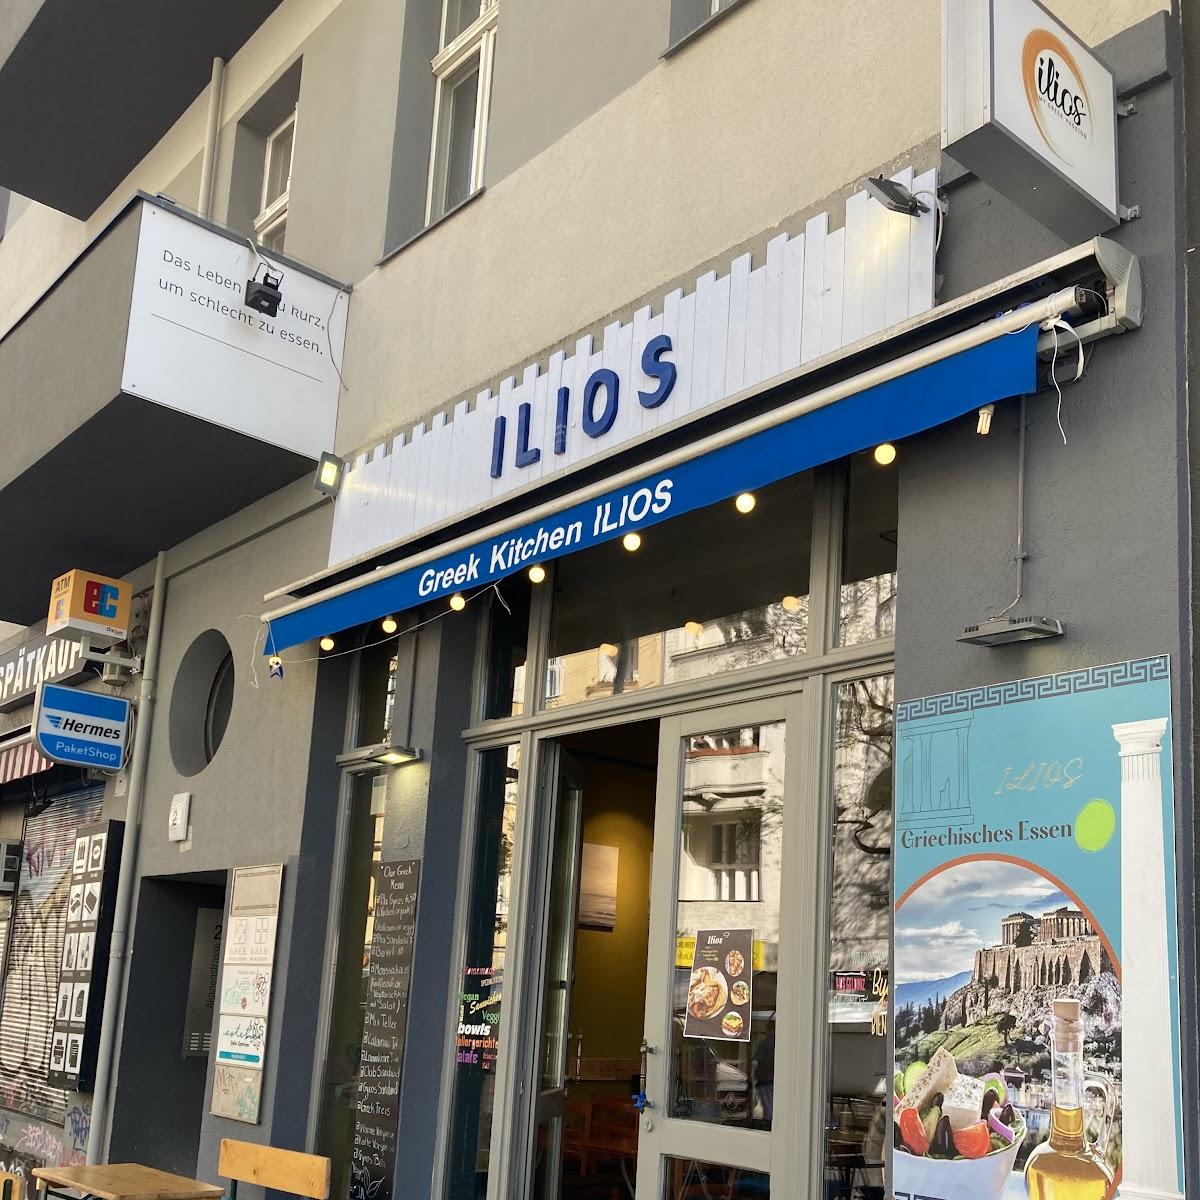 Restaurant "Ilios Greek Kitchen" in Berlin